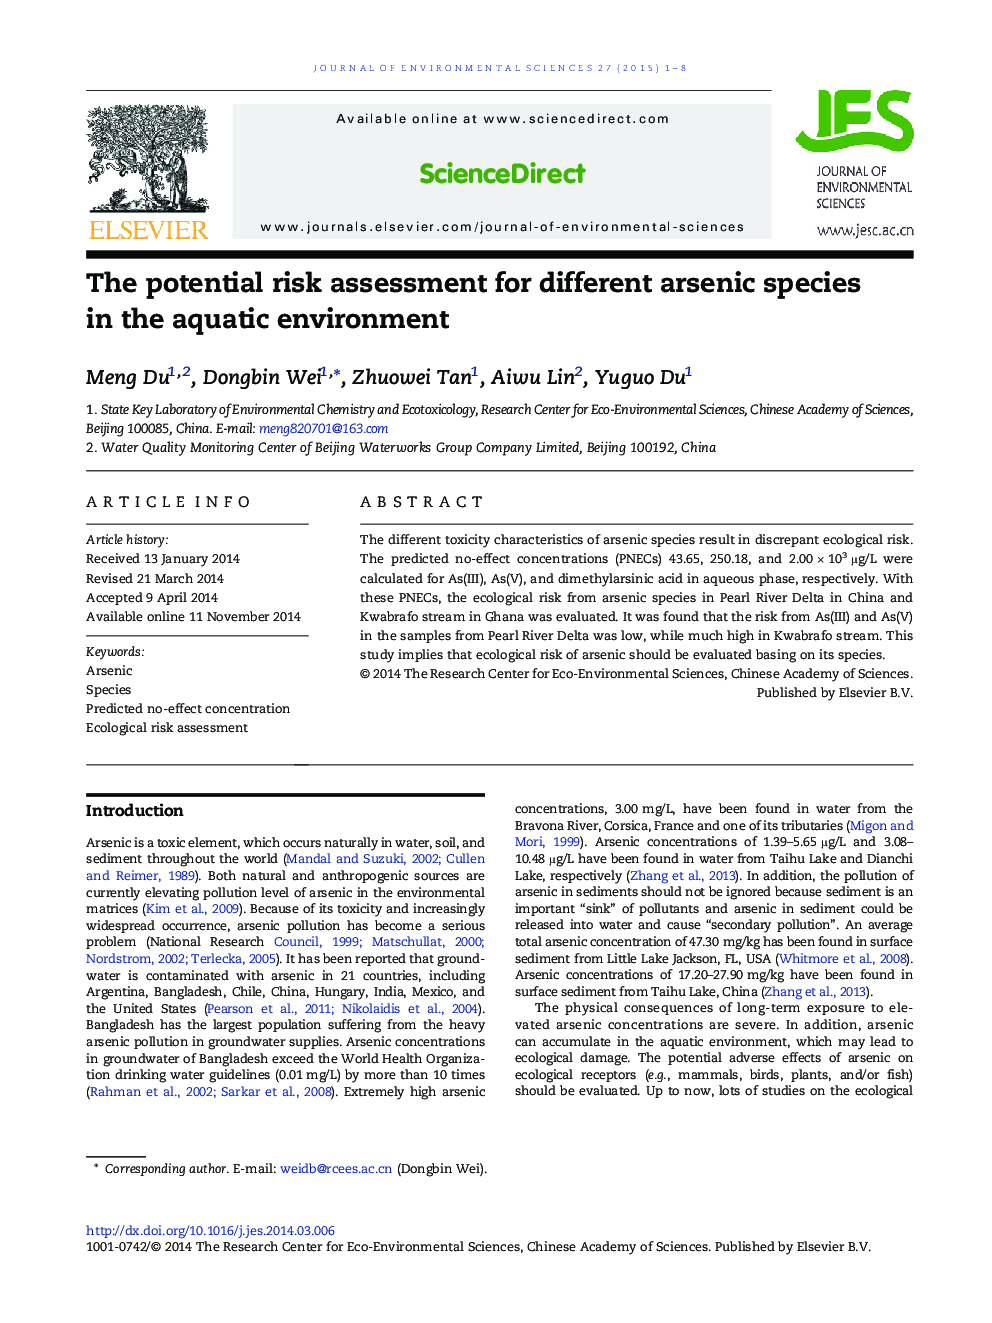 ارزیابی خطر بالقوه برای گونه های مختلف آرسنیک در محیط آبزی 